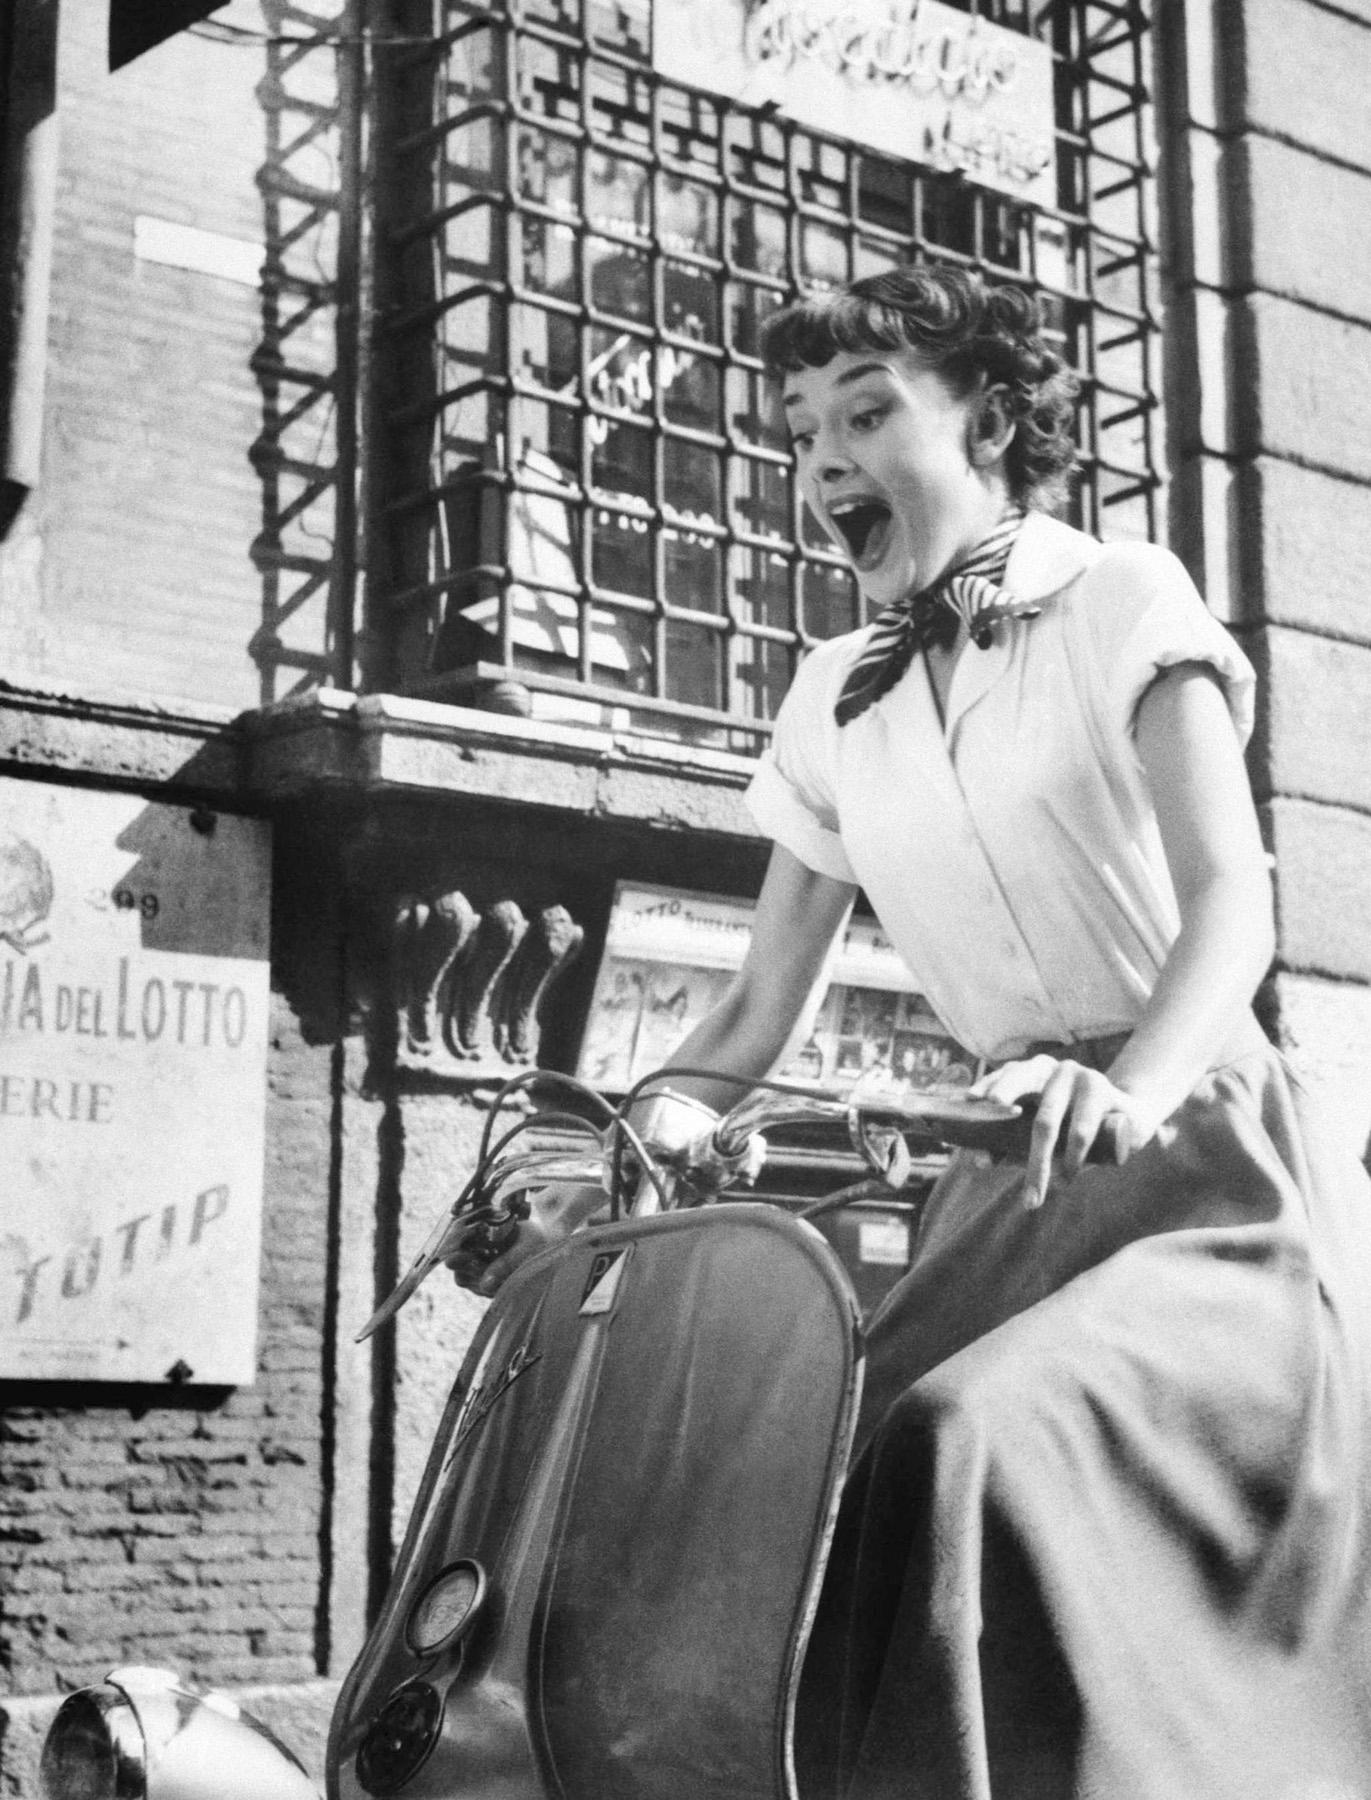 L'automne en scooter avec l'élégance d'Audrey Hepburn